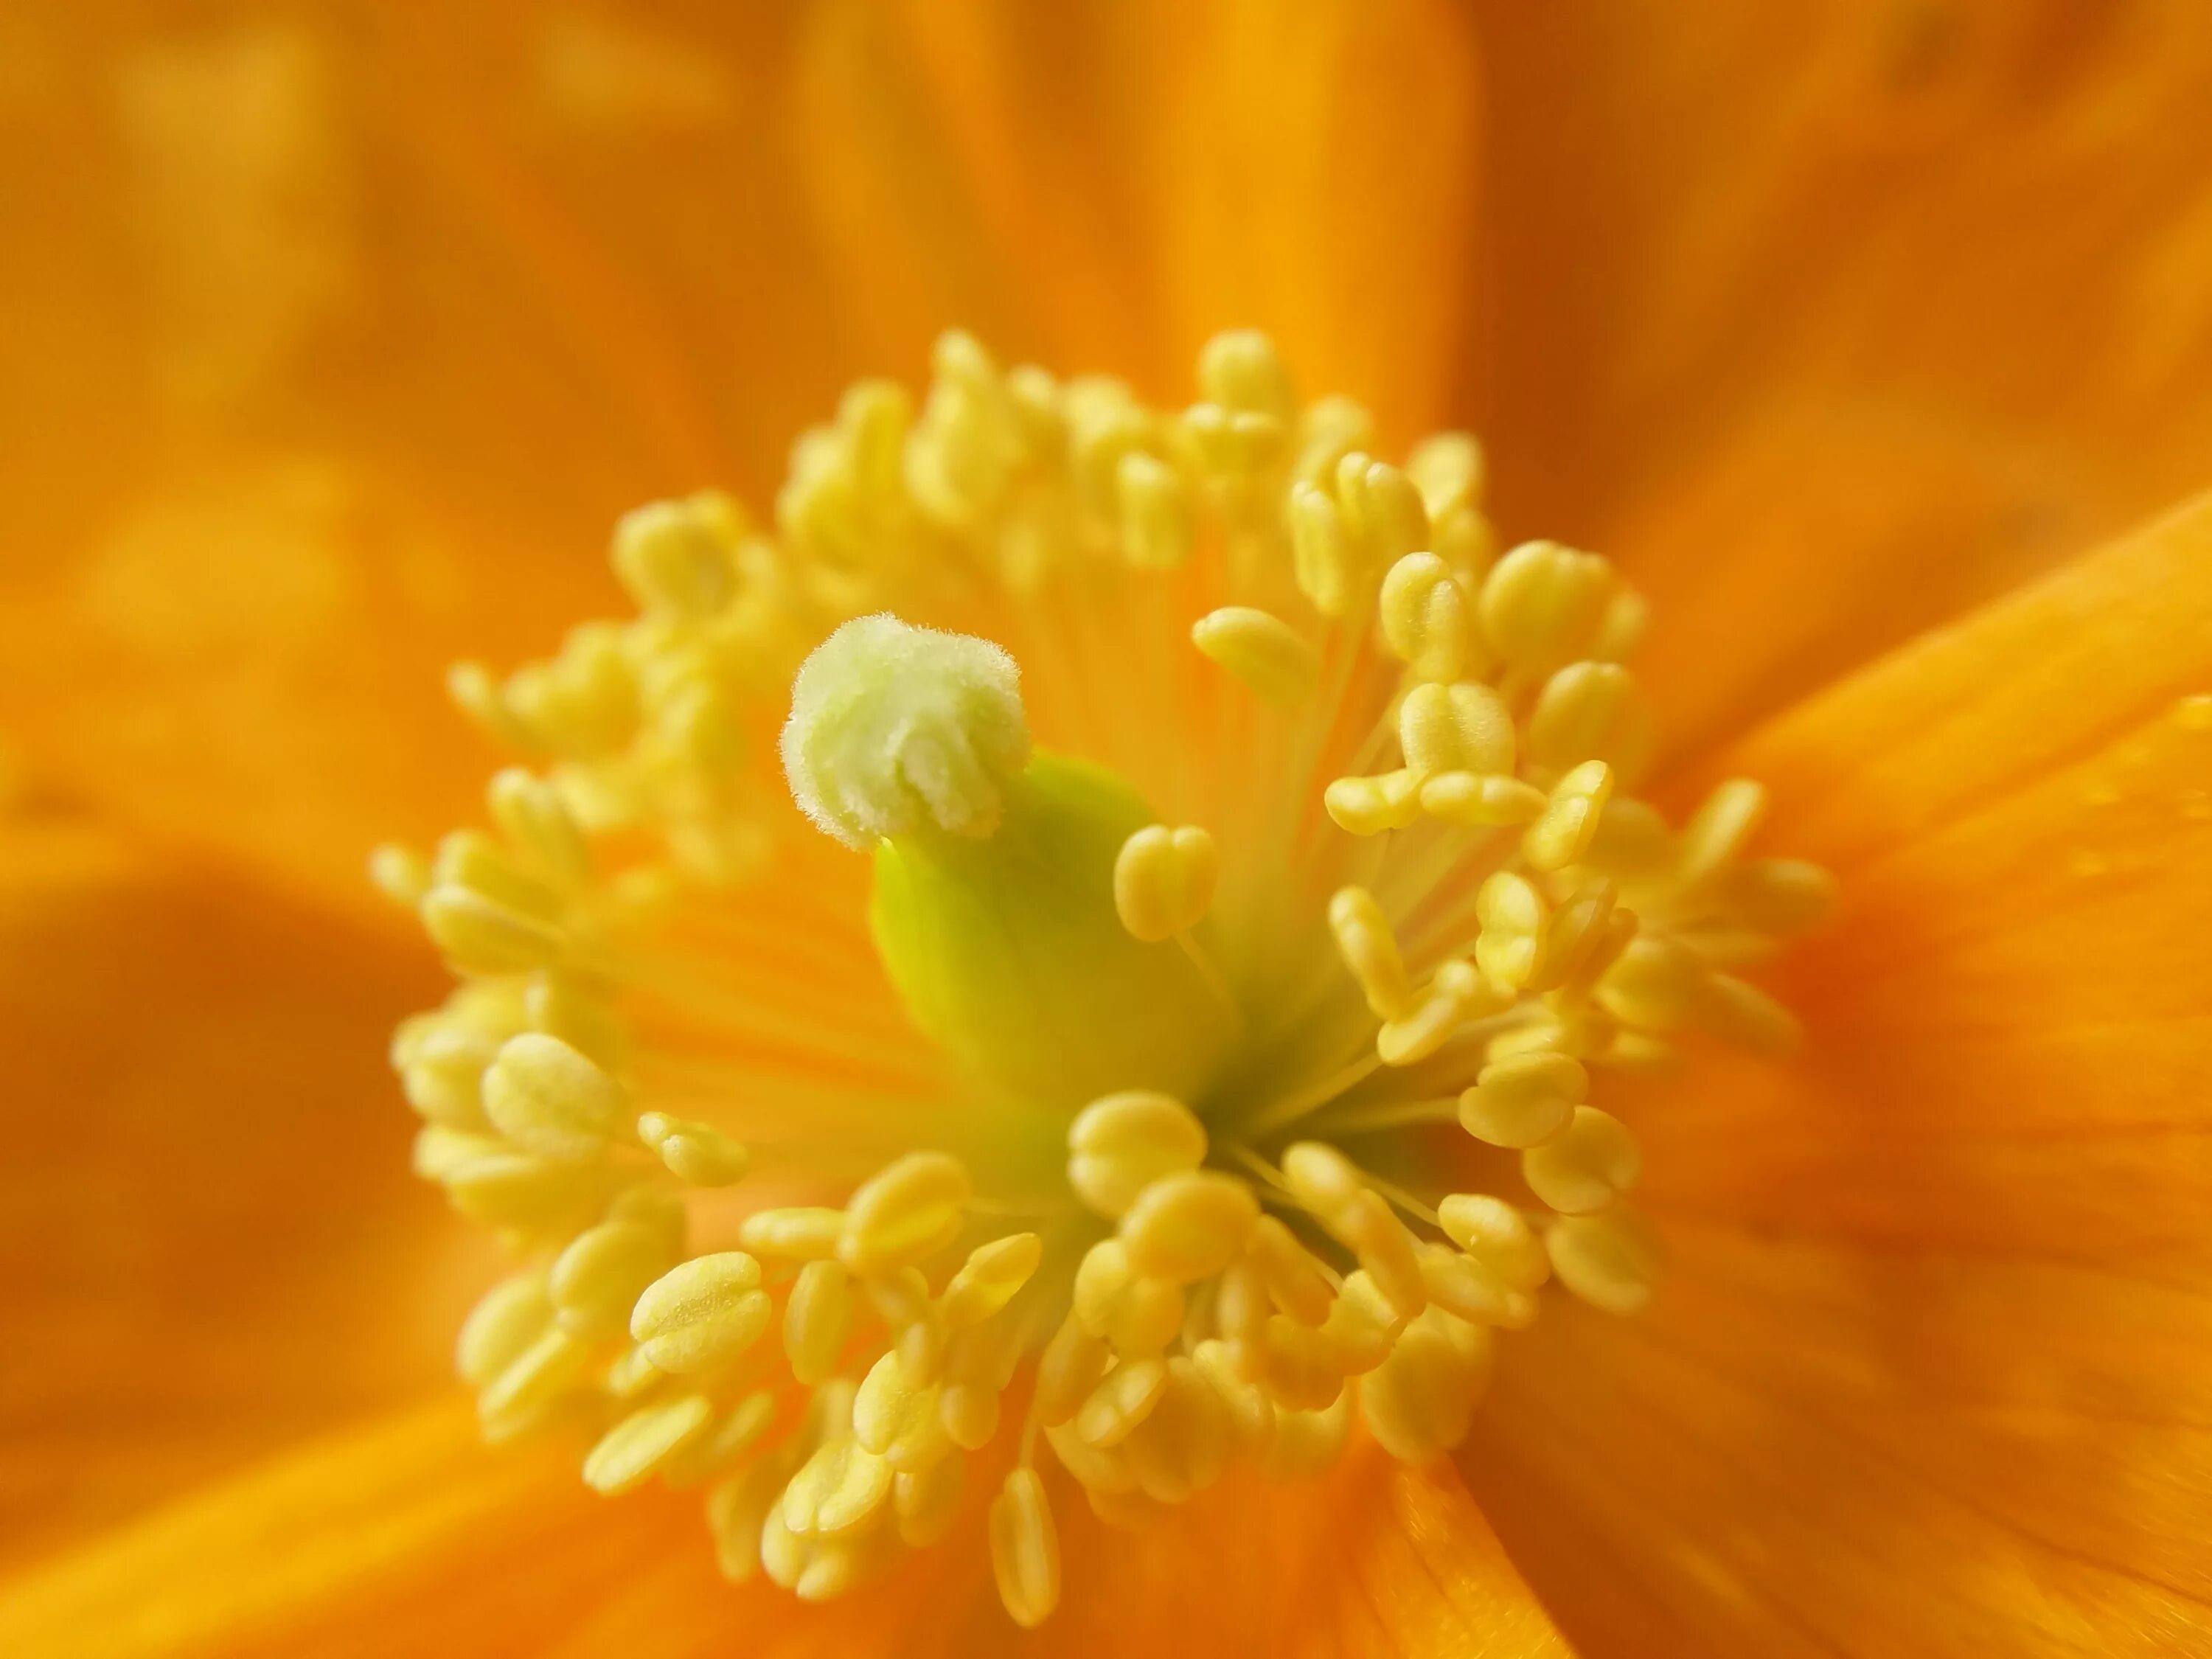 Цв пыльца. Пыльца на цветке. Цветы крупным планом. Макросъемка цветочной пыльцы. Желтые и оранжевые весенние цветы.